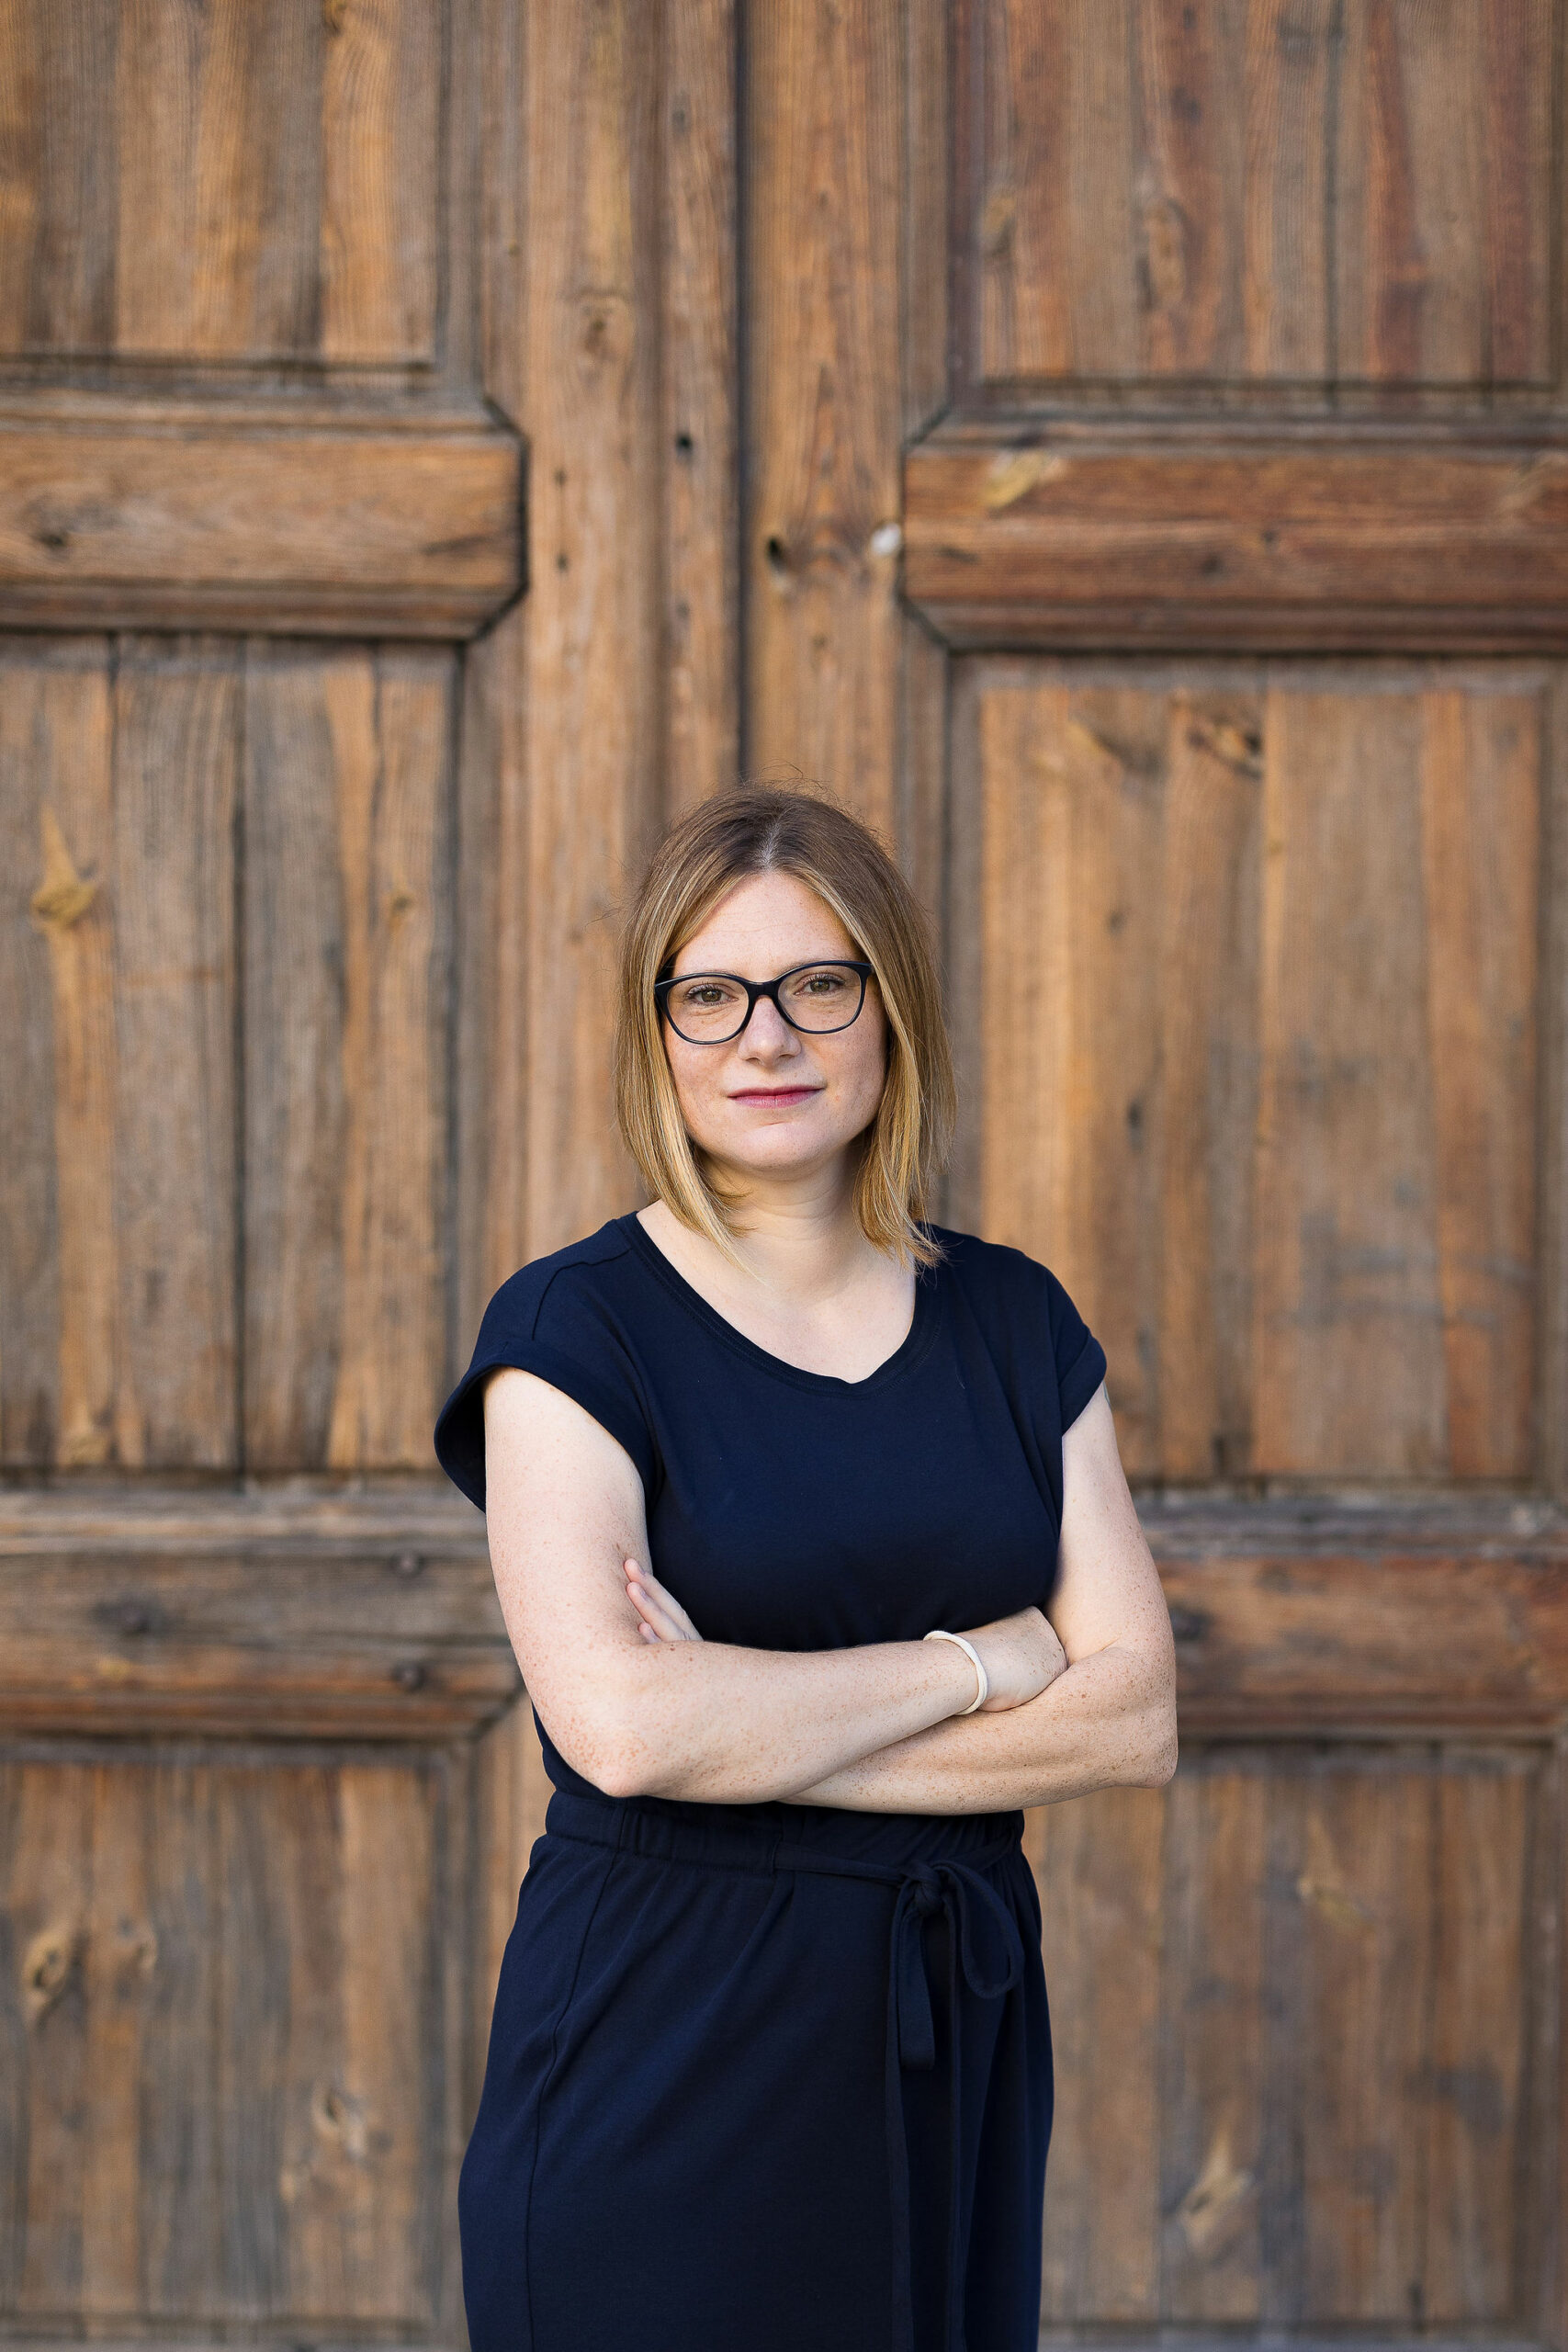 Katharina Schmidt als neue Chefredakteurin der Wiener Zeitung nominiert